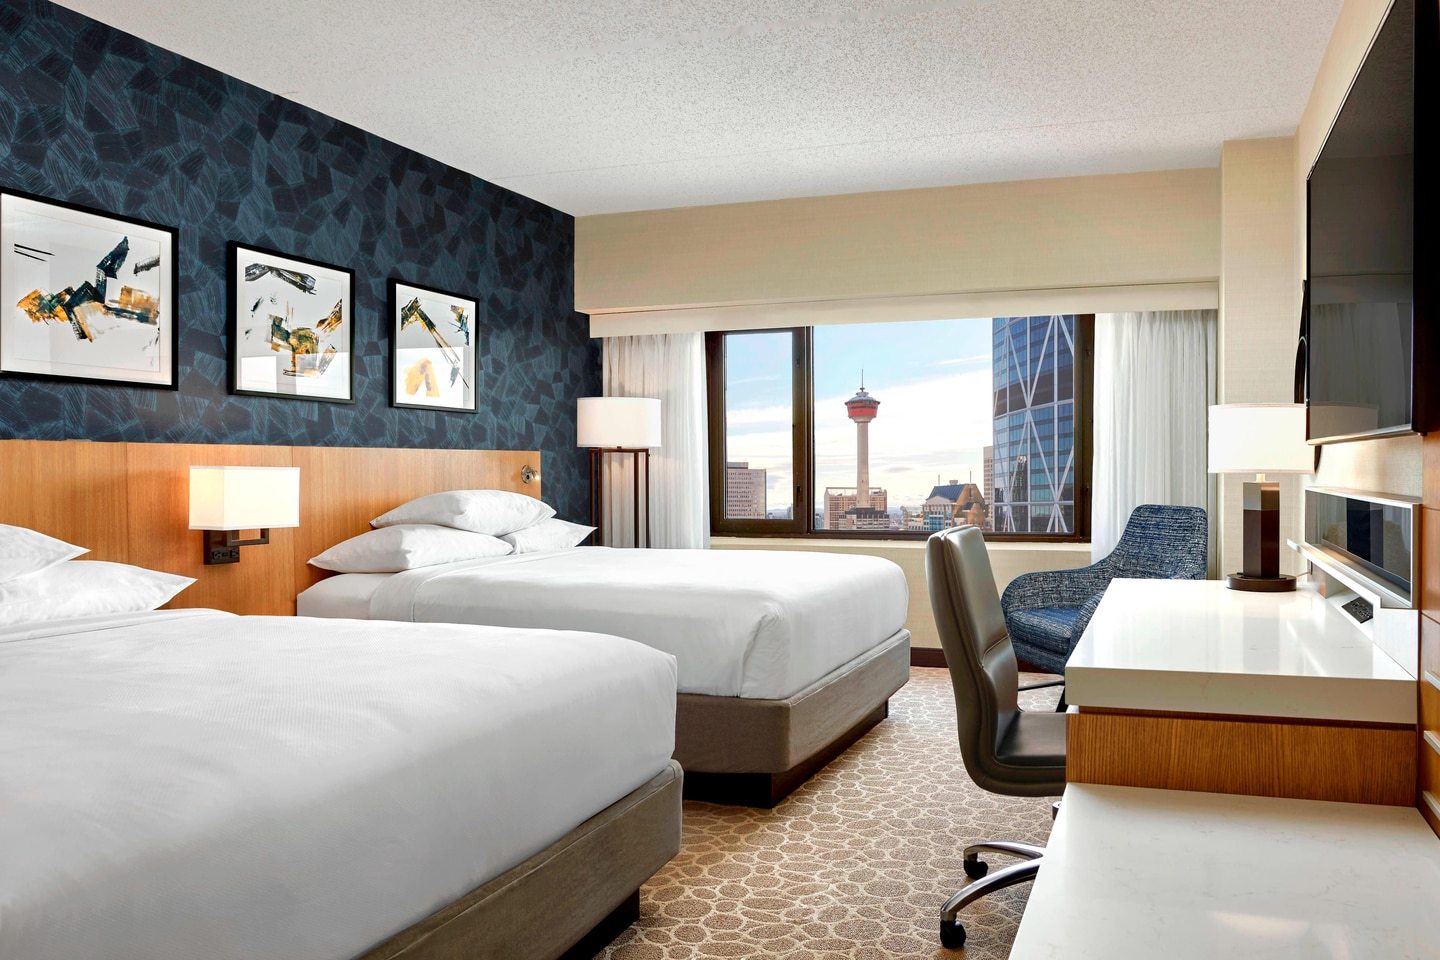 Photo of Delta Hotels Calgary Downtown, Calgary, AB, Canada